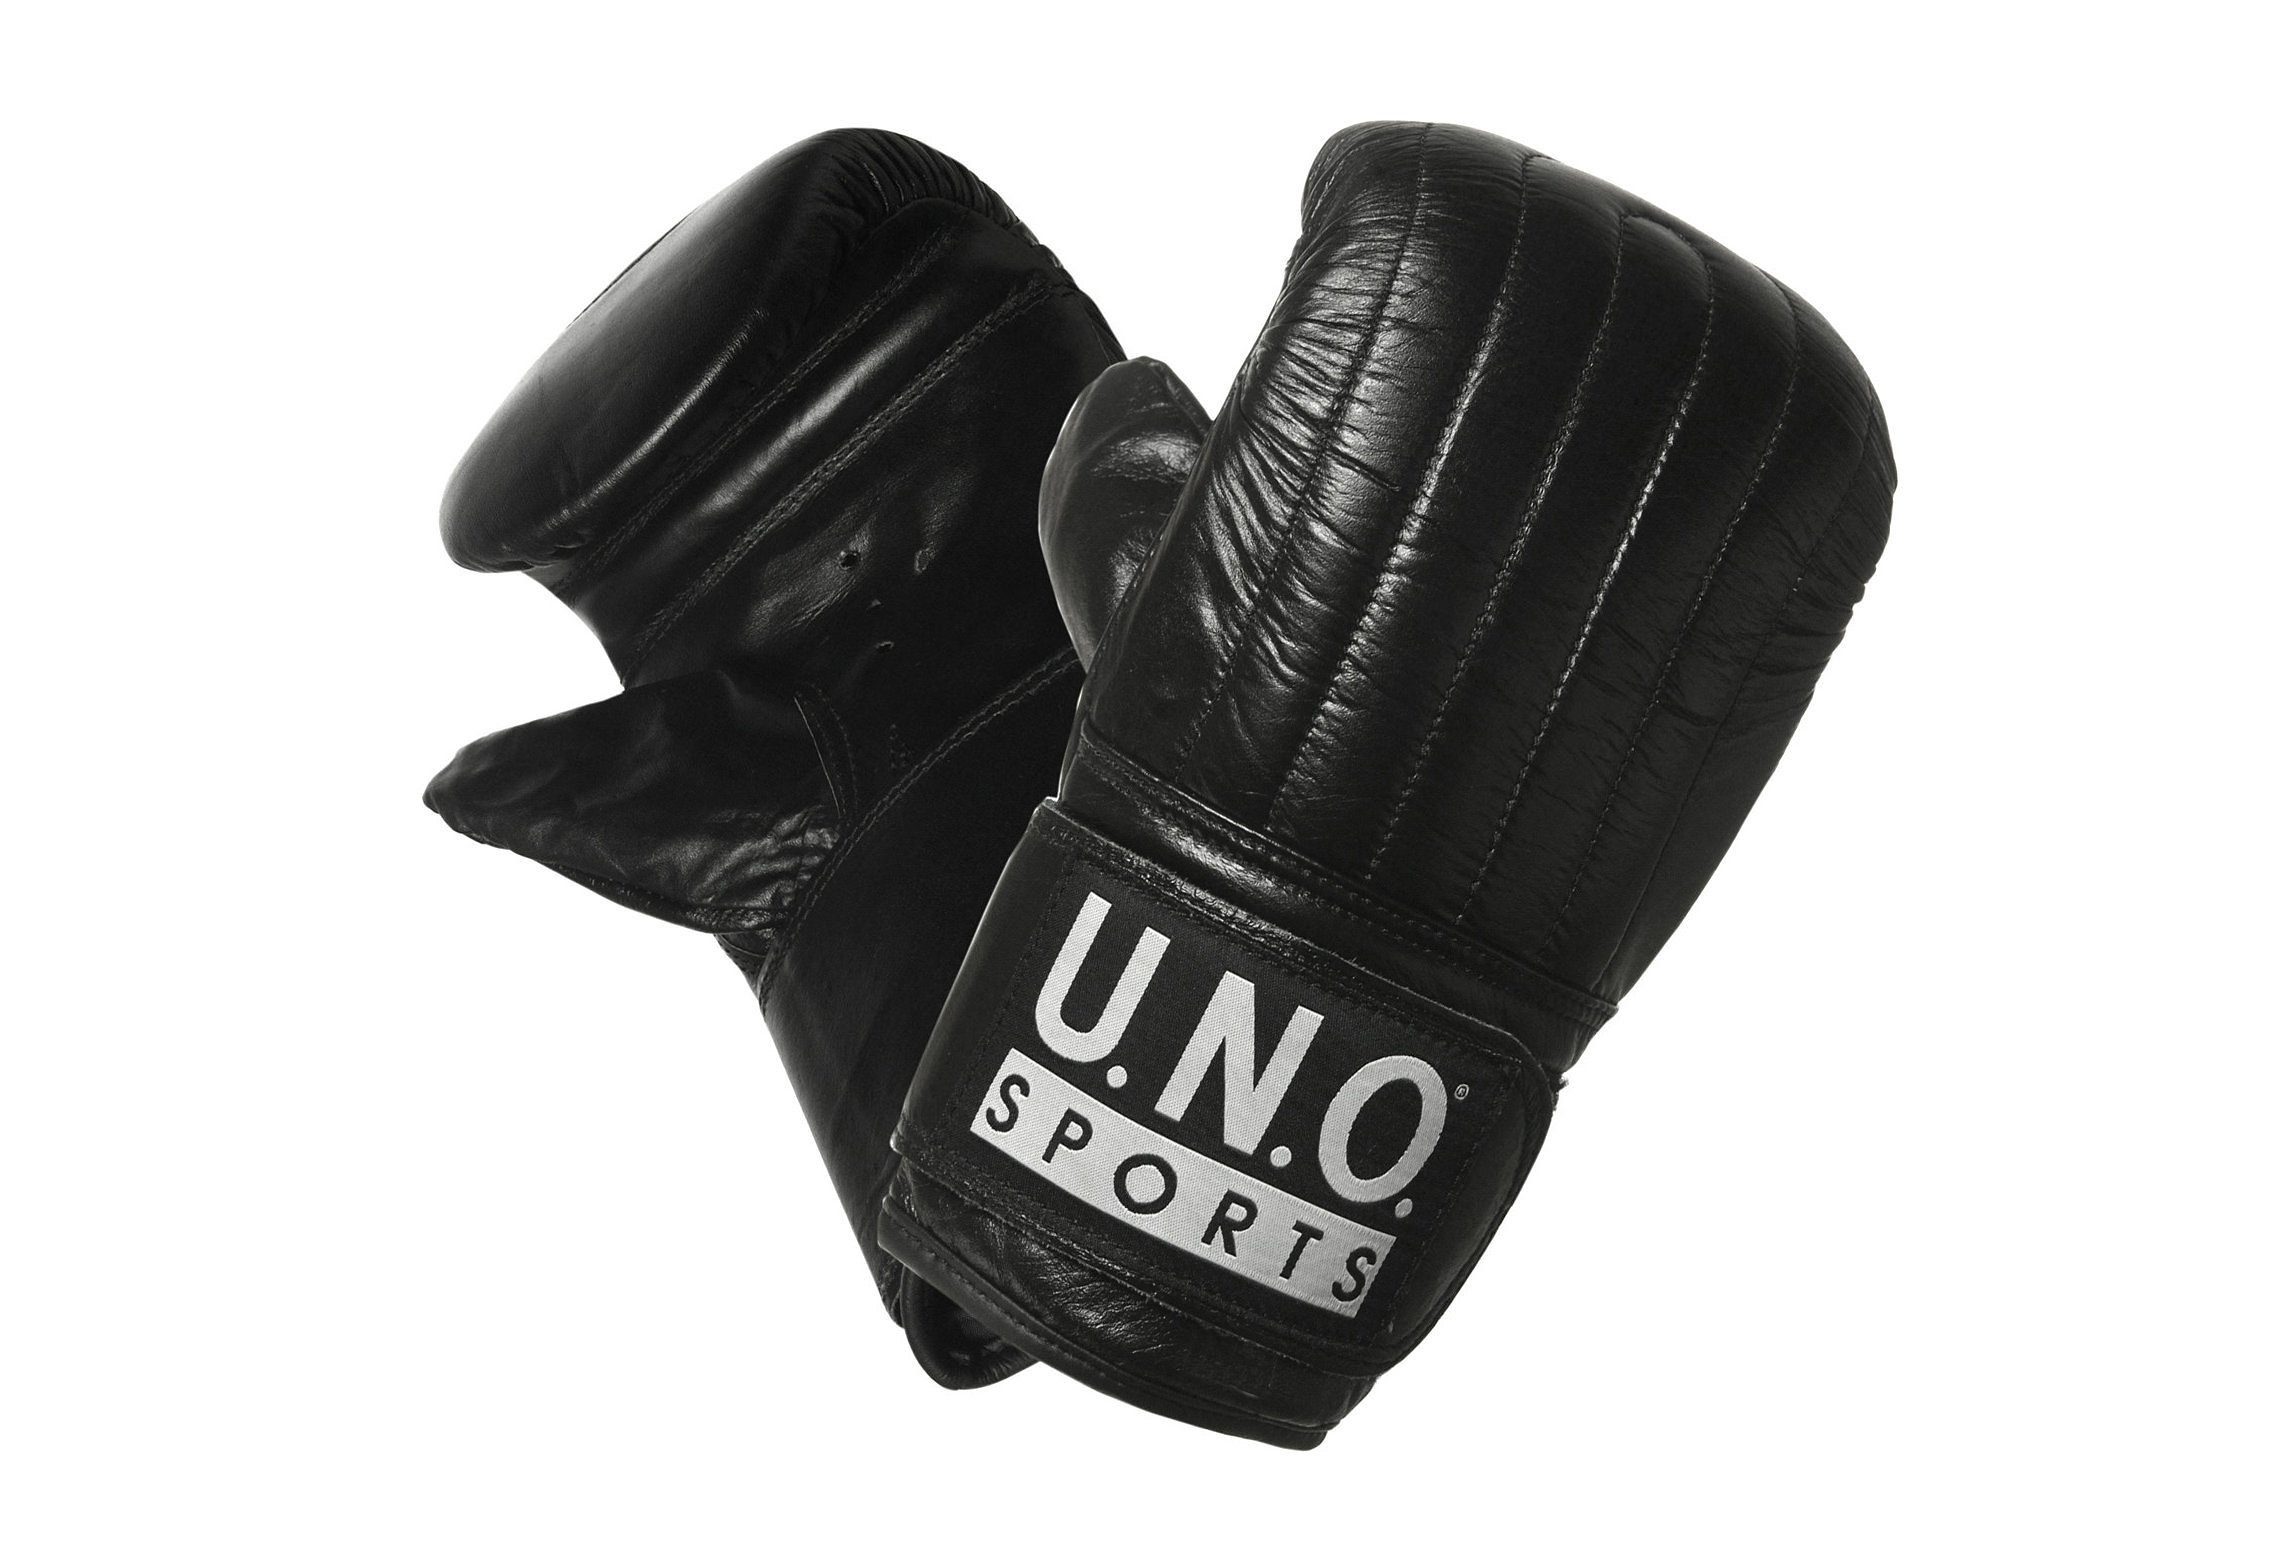 SPORTS U.N.O. Punch Boxhandschuhe